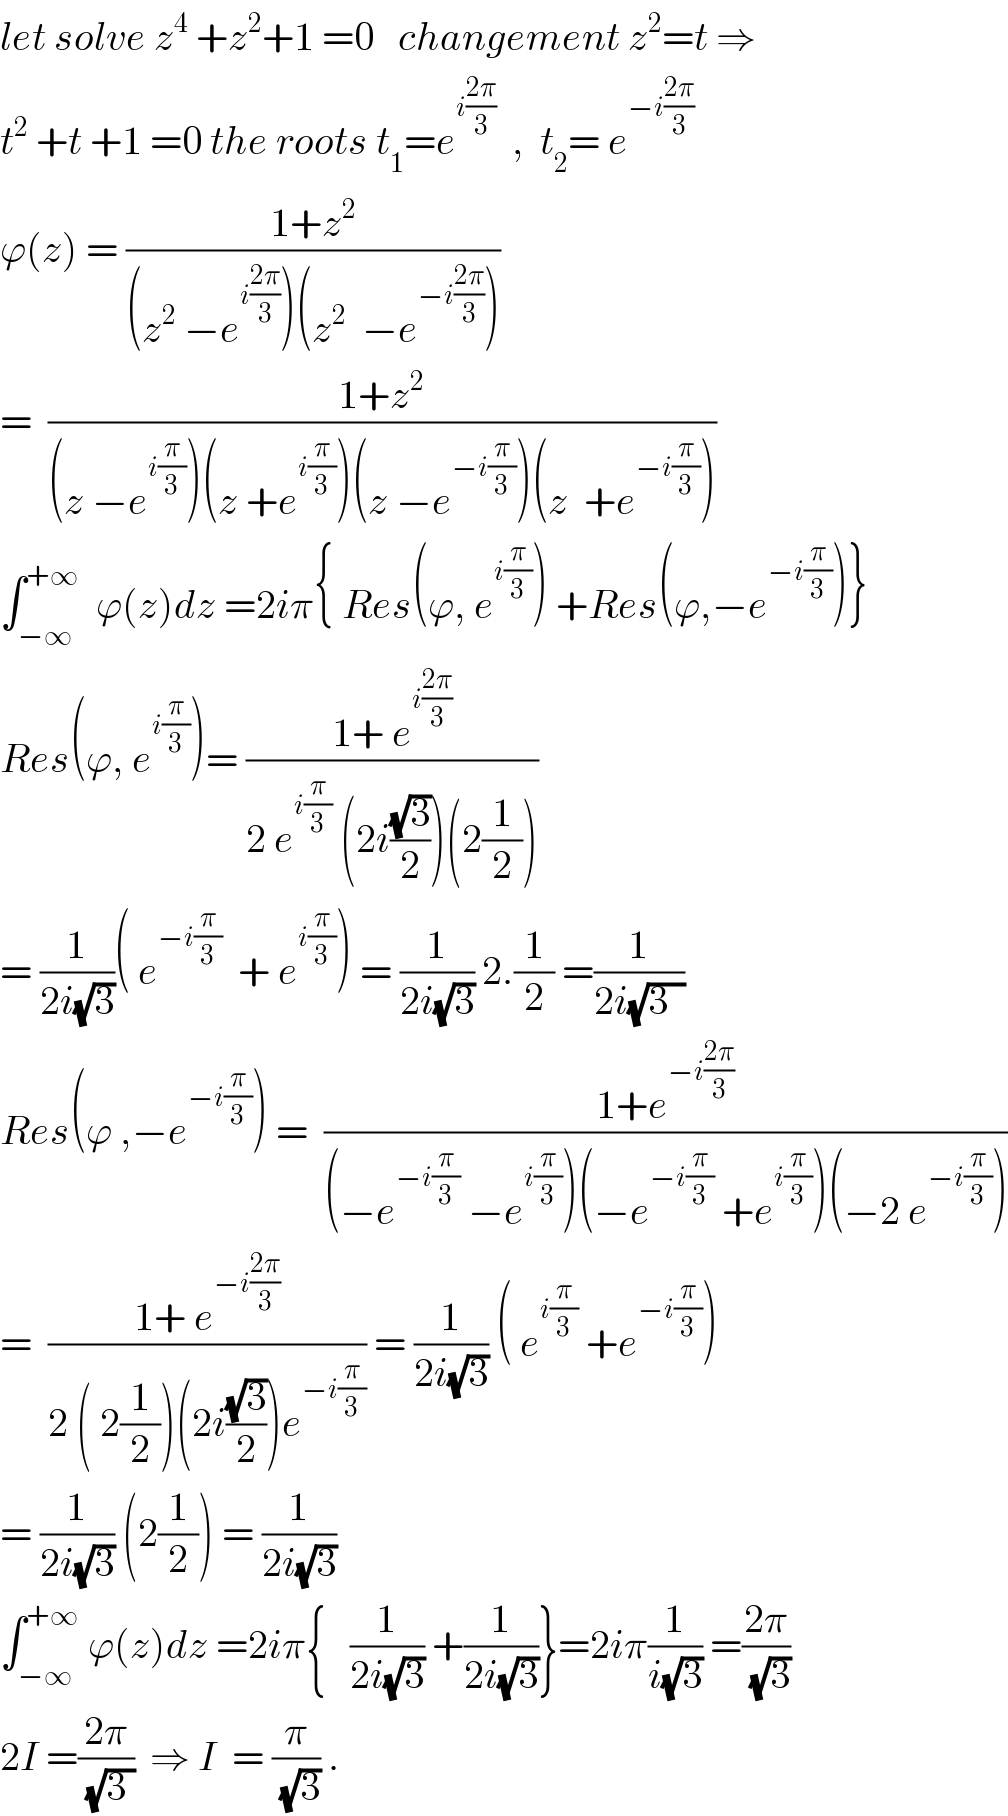 let solve z^4  +z^2 +1 =0   changement z^2 =t ⇒  t^2  +t +1 =0 the roots t_1 =e^(i((2π)/3))   ,  t_2 = e^(−i((2π)/3))   ϕ(z) = ((1+z^2 )/((z^2  −e^(i((2π)/3)) )(z^2   −e^(−i((2π)/3)) )))  =  ((1+z^2 )/((z −e^(i(π/3)) )(z +e^(i(π/3)) )(z −e^(−i(π/3)) )(z  +e^(−i(π/3)) )))  ∫_(−∞) ^(+∞)   ϕ(z)dz =2iπ{ Res(ϕ, e^(i(π/3)) ) +Res(ϕ,−e^(−i(π/3)) )}  Res(ϕ, e^(i(π/3)) )= ((1+ e^(i((2π)/3)) )/(2 e^(i(π/3))  (2i((√3)/2))(2(1/2))))  = (1/(2i(√3)))( e^(−i(π/3))   + e^(i(π/3)) ) = (1/(2i(√3))) 2.(1/2) =(1/(2i(√(3  ))))  Res(ϕ ,−e^(−i(π/3)) ) =  ((1+e^(−i((2π)/3)) )/((−e^(−i(π/3))  −e^(i(π/3)) )(−e^(−i(π/3))  +e^(i(π/3)) )(−2 e^(−i(π/3)) )))  =  ((1+ e^(−i((2π)/3)) )/(2 ( 2(1/2))(2i((√3)/2))e^(−i(π/3)) )) = (1/(2i(√3))) ( e^(i(π/3))  +e^(−i(π/3)) )  = (1/(2i(√3))) (2(1/2)) = (1/(2i(√3)))  ∫_(−∞) ^(+∞)  ϕ(z)dz =2iπ{   (1/(2i(√3))) +(1/(2i(√3)))}=2iπ(1/(i(√3))) =((2π)/(√3))  2I =((2π)/(√(3 )))  ⇒ I  = (π/(√3)) .  